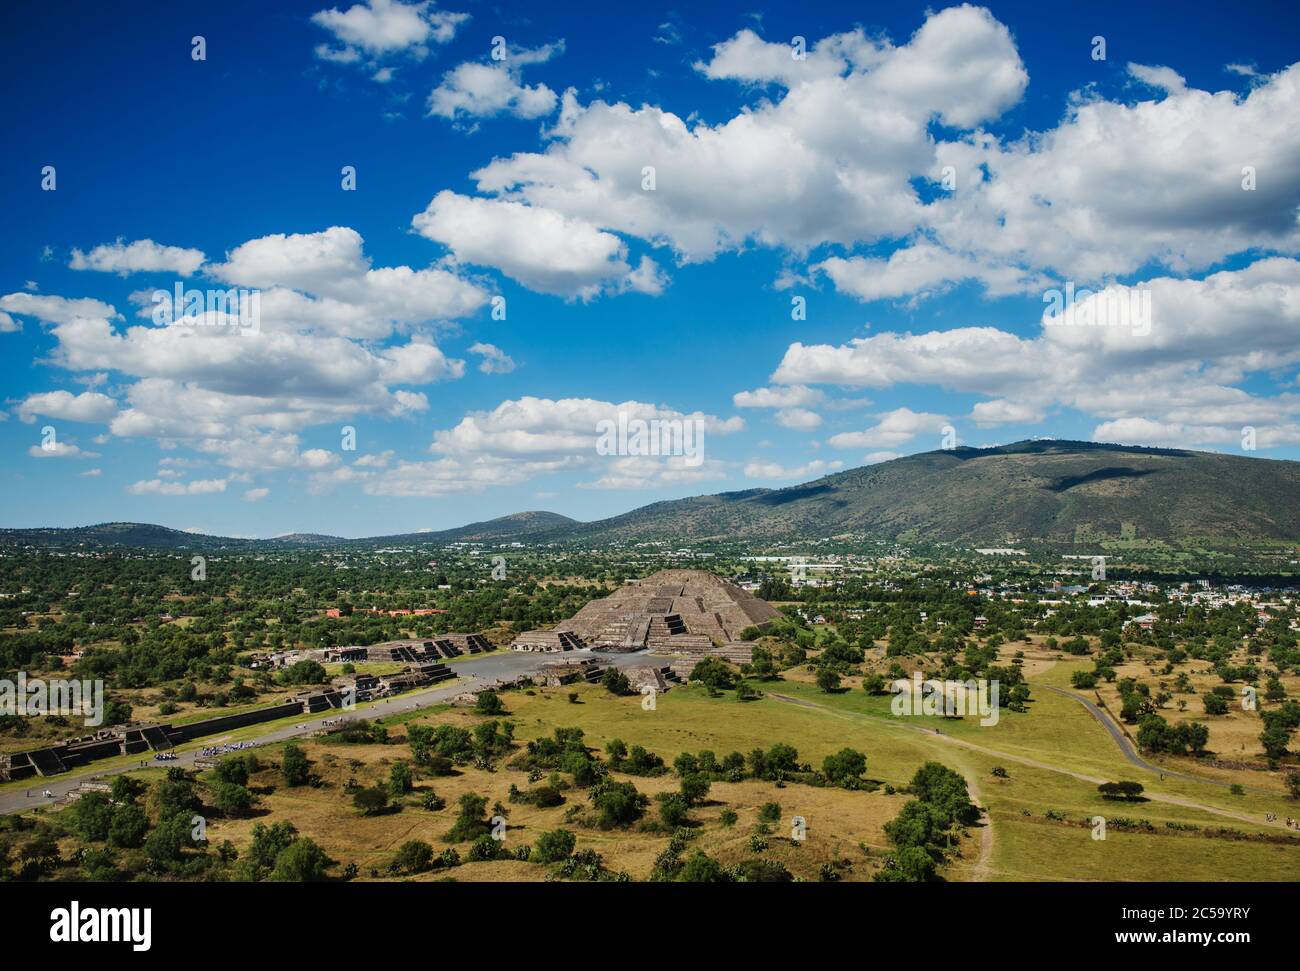 Landscape of Mesoamerica, Mexico Stock Photo